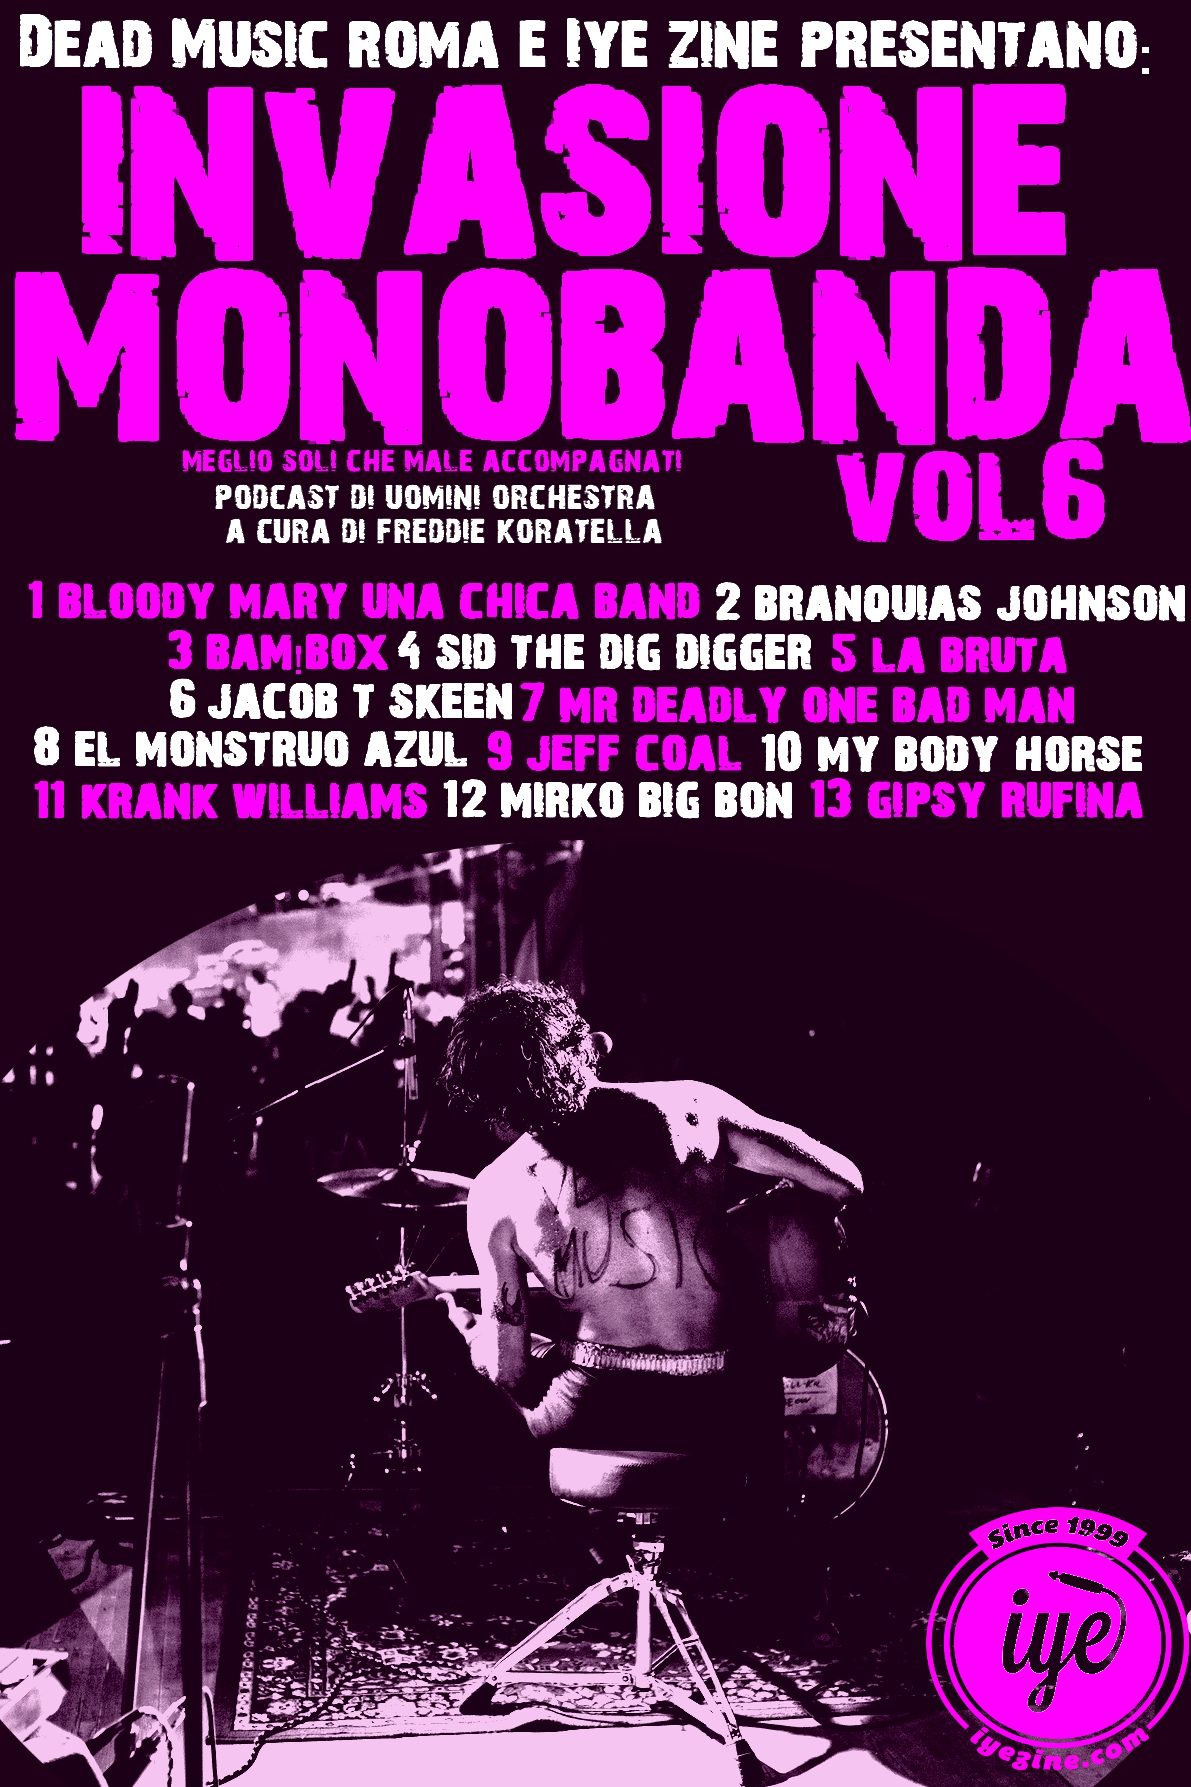 Invasione Monobanda Vol. 6 - In Your Eyes Ezine